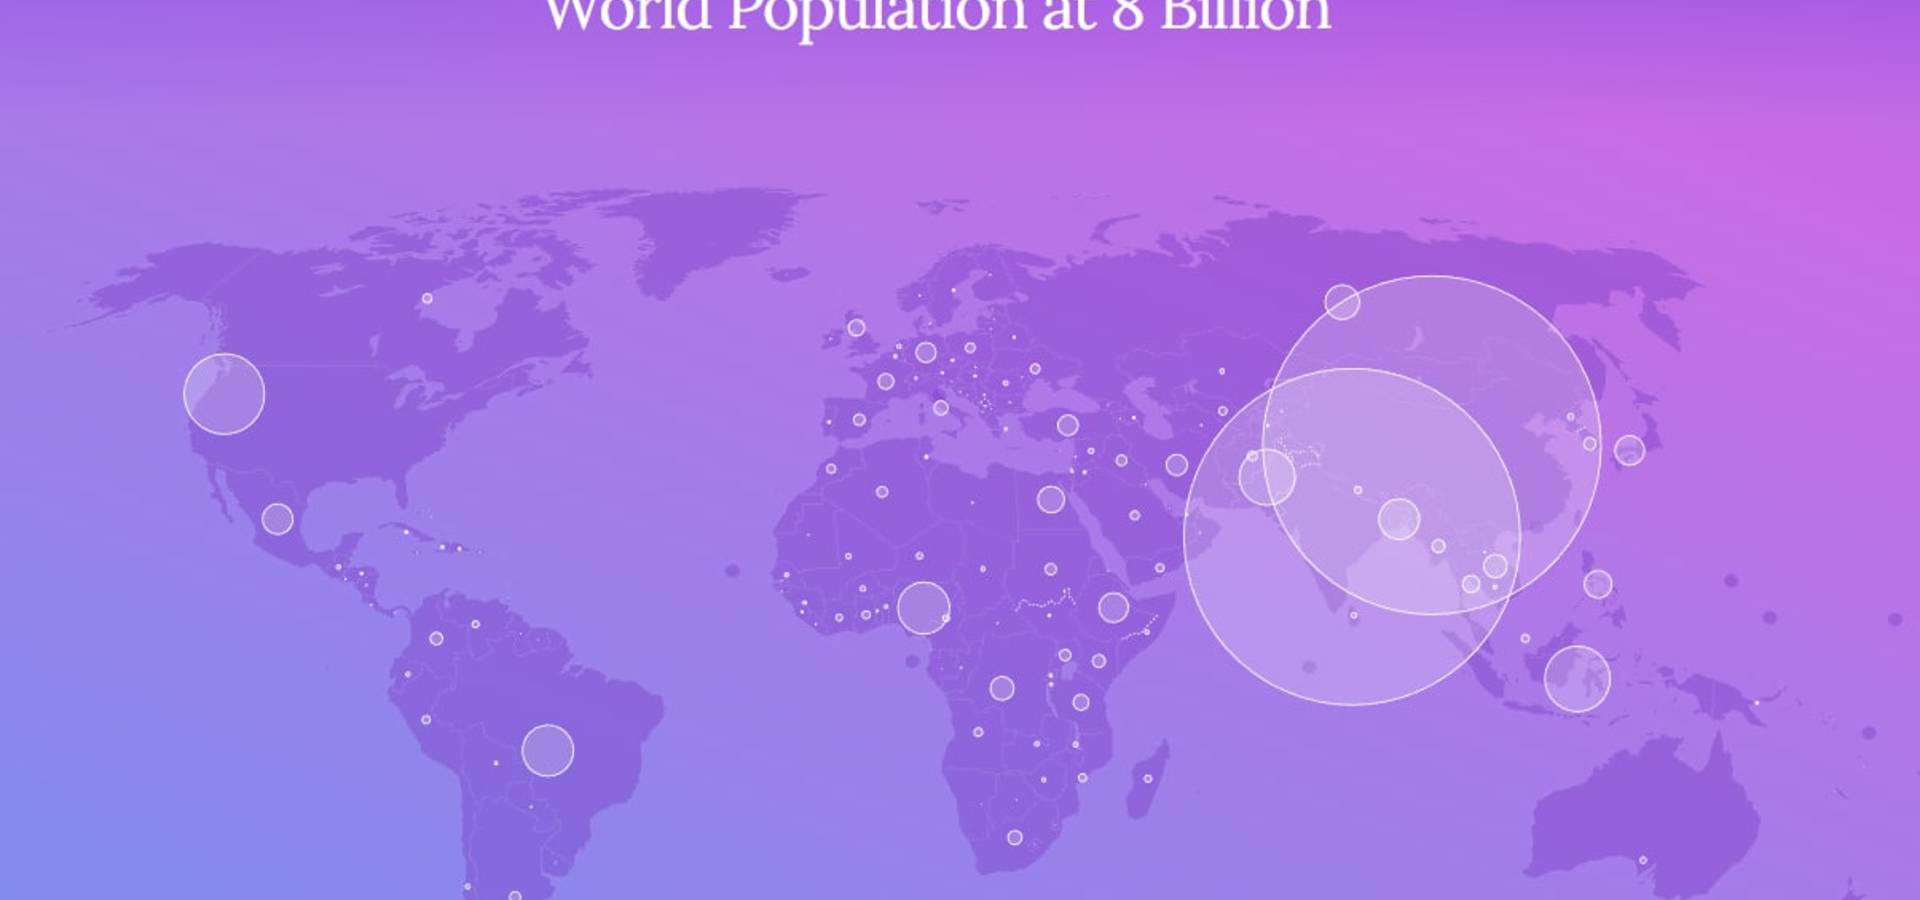 Чисельність населення Землі досягла 8 мільярдів людей